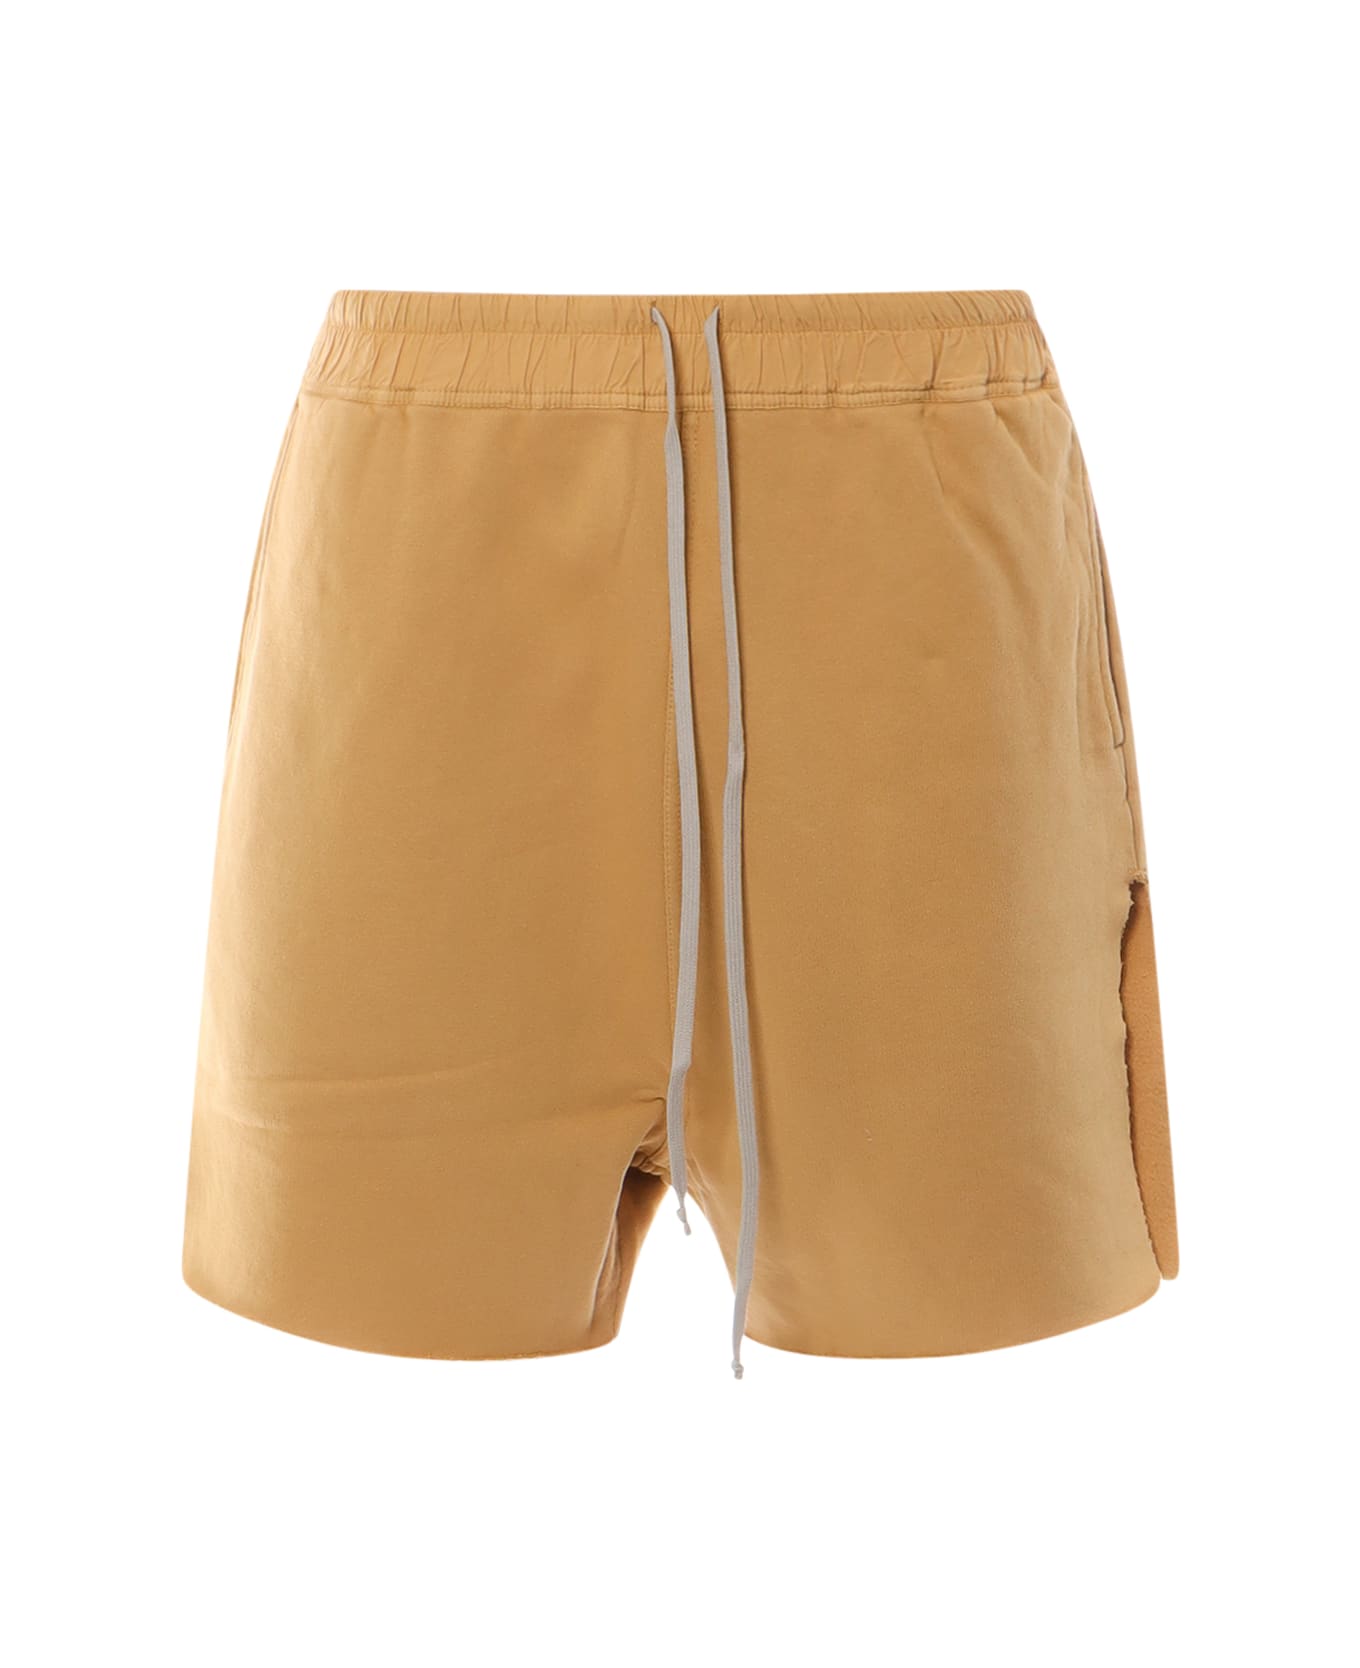 DRKSHDW Bermuda Shorts - Beige